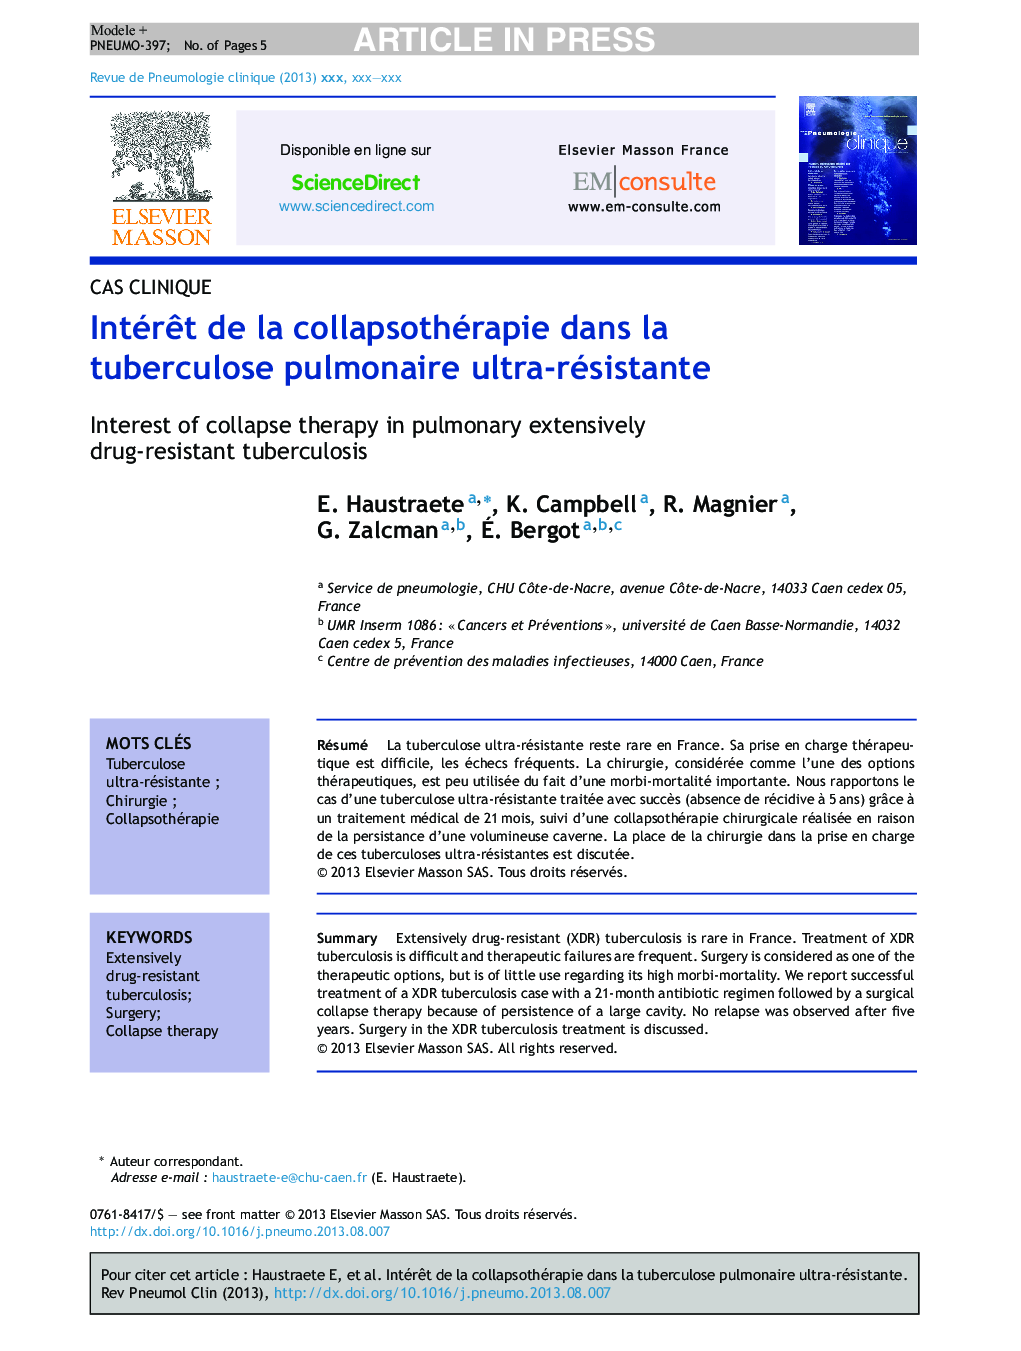 IntérÃªt de la collapsothérapie dans la tuberculose pulmonaire ultra-résistante